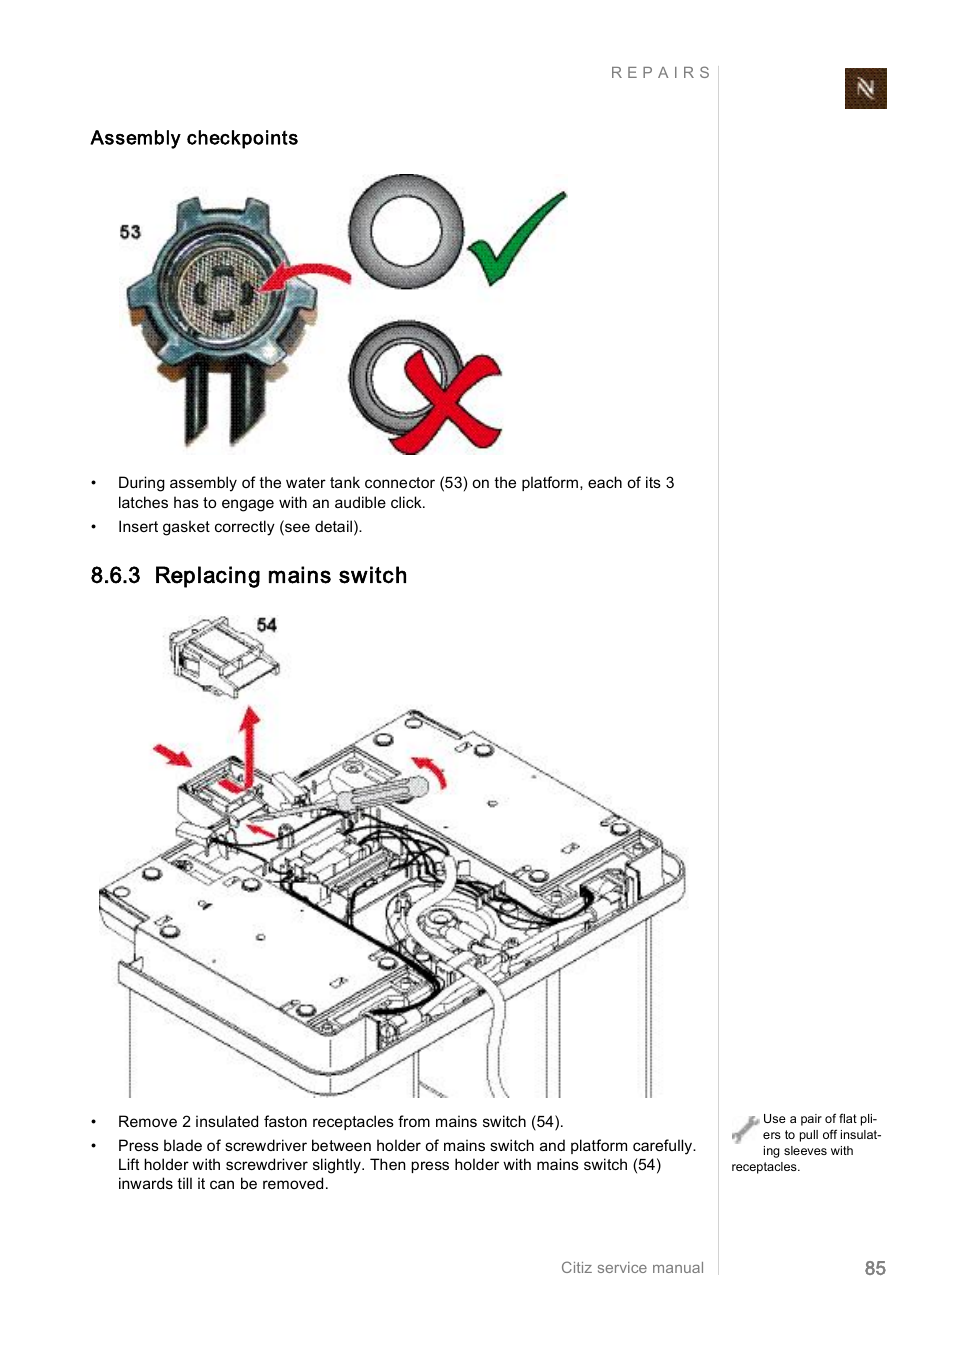 3 replacing mains switch | Nespresso Citiz & Co EF 488 User Manual | Page  85 / 158 | Original mode